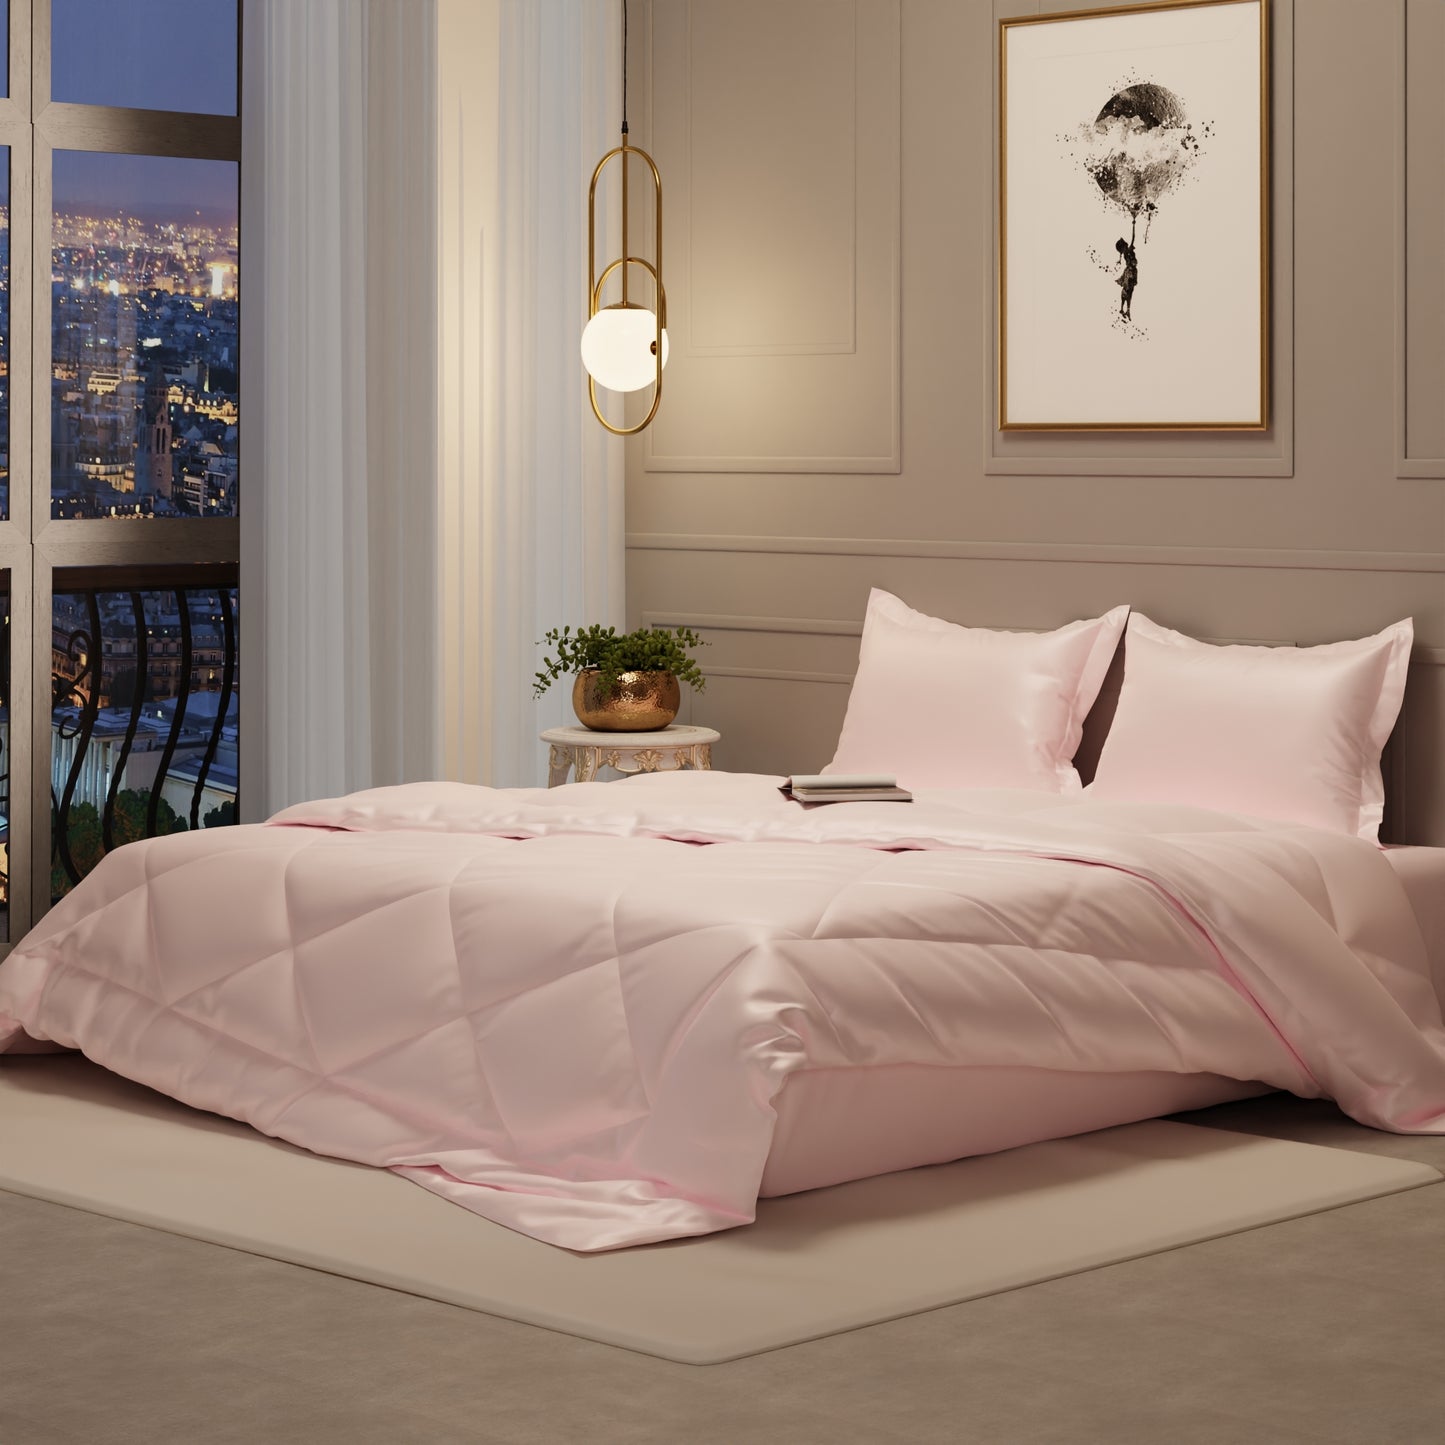 Blushing Pink Comforter